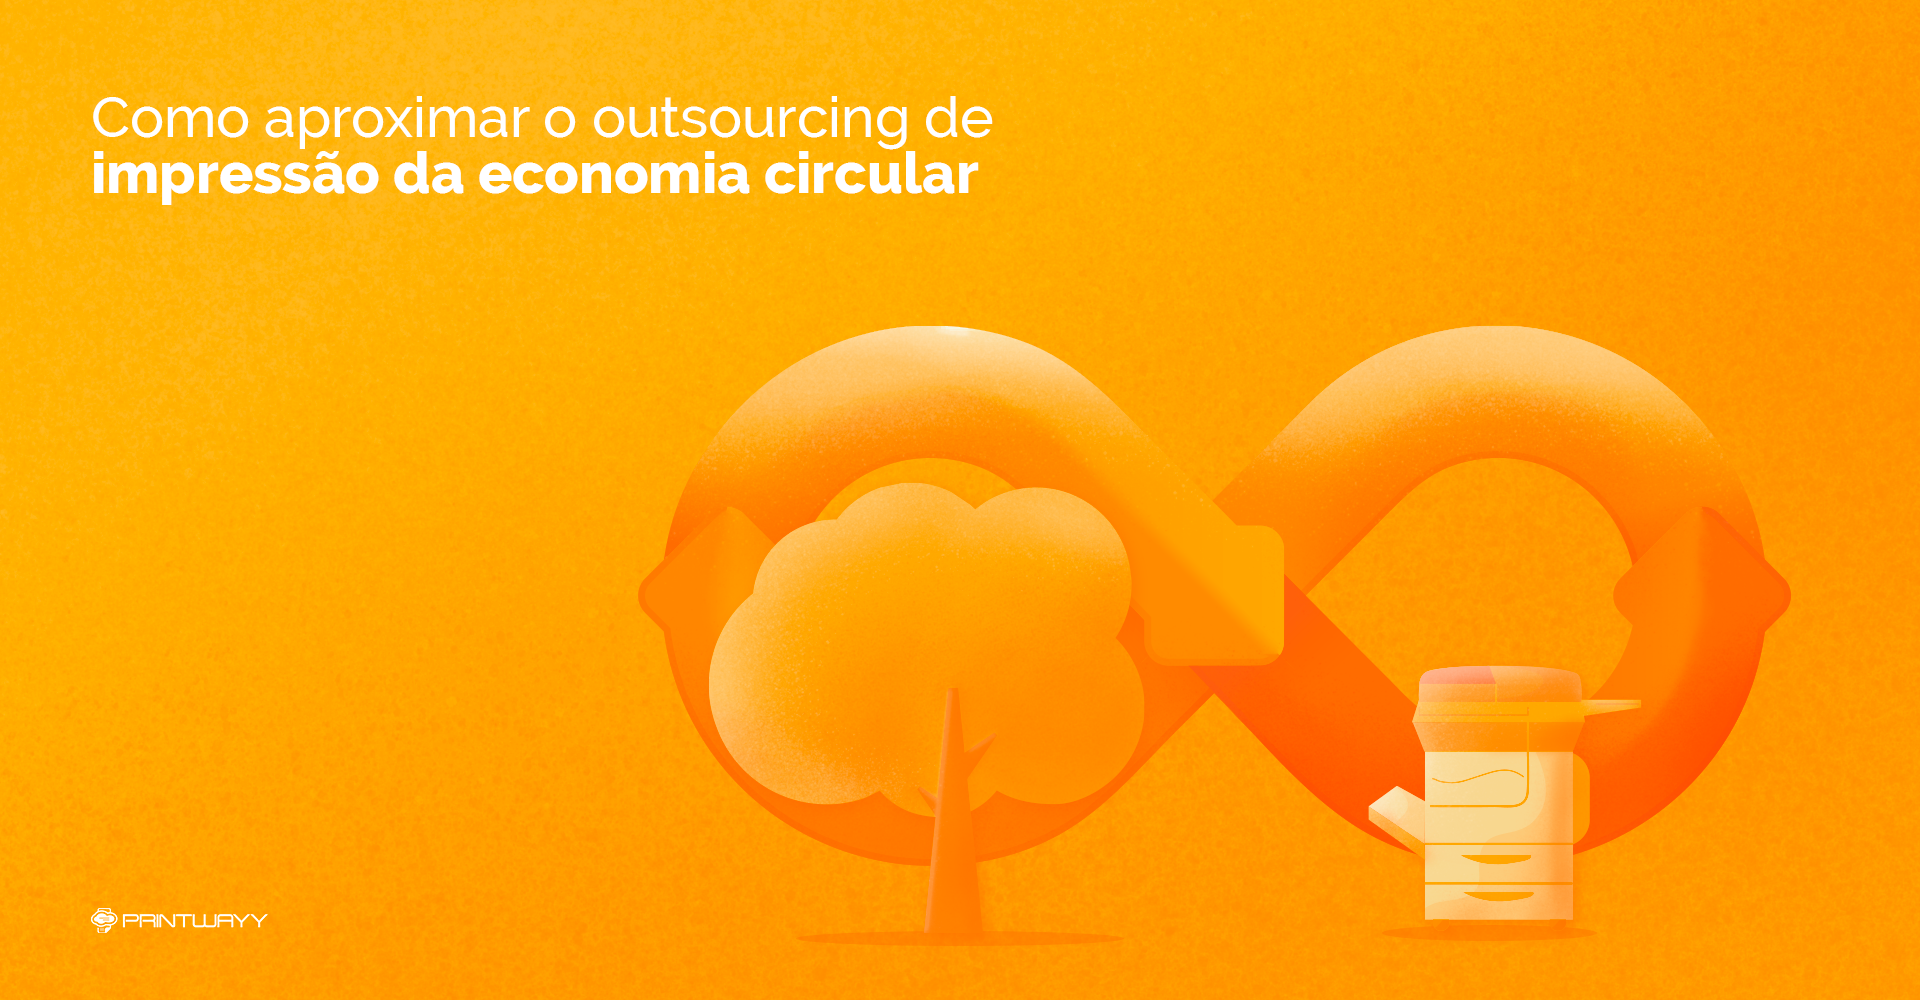 Um símbolo de infinito e, na frente, uma árvore e uma impressora, fazendo referência a economia circular e o outsourcing.